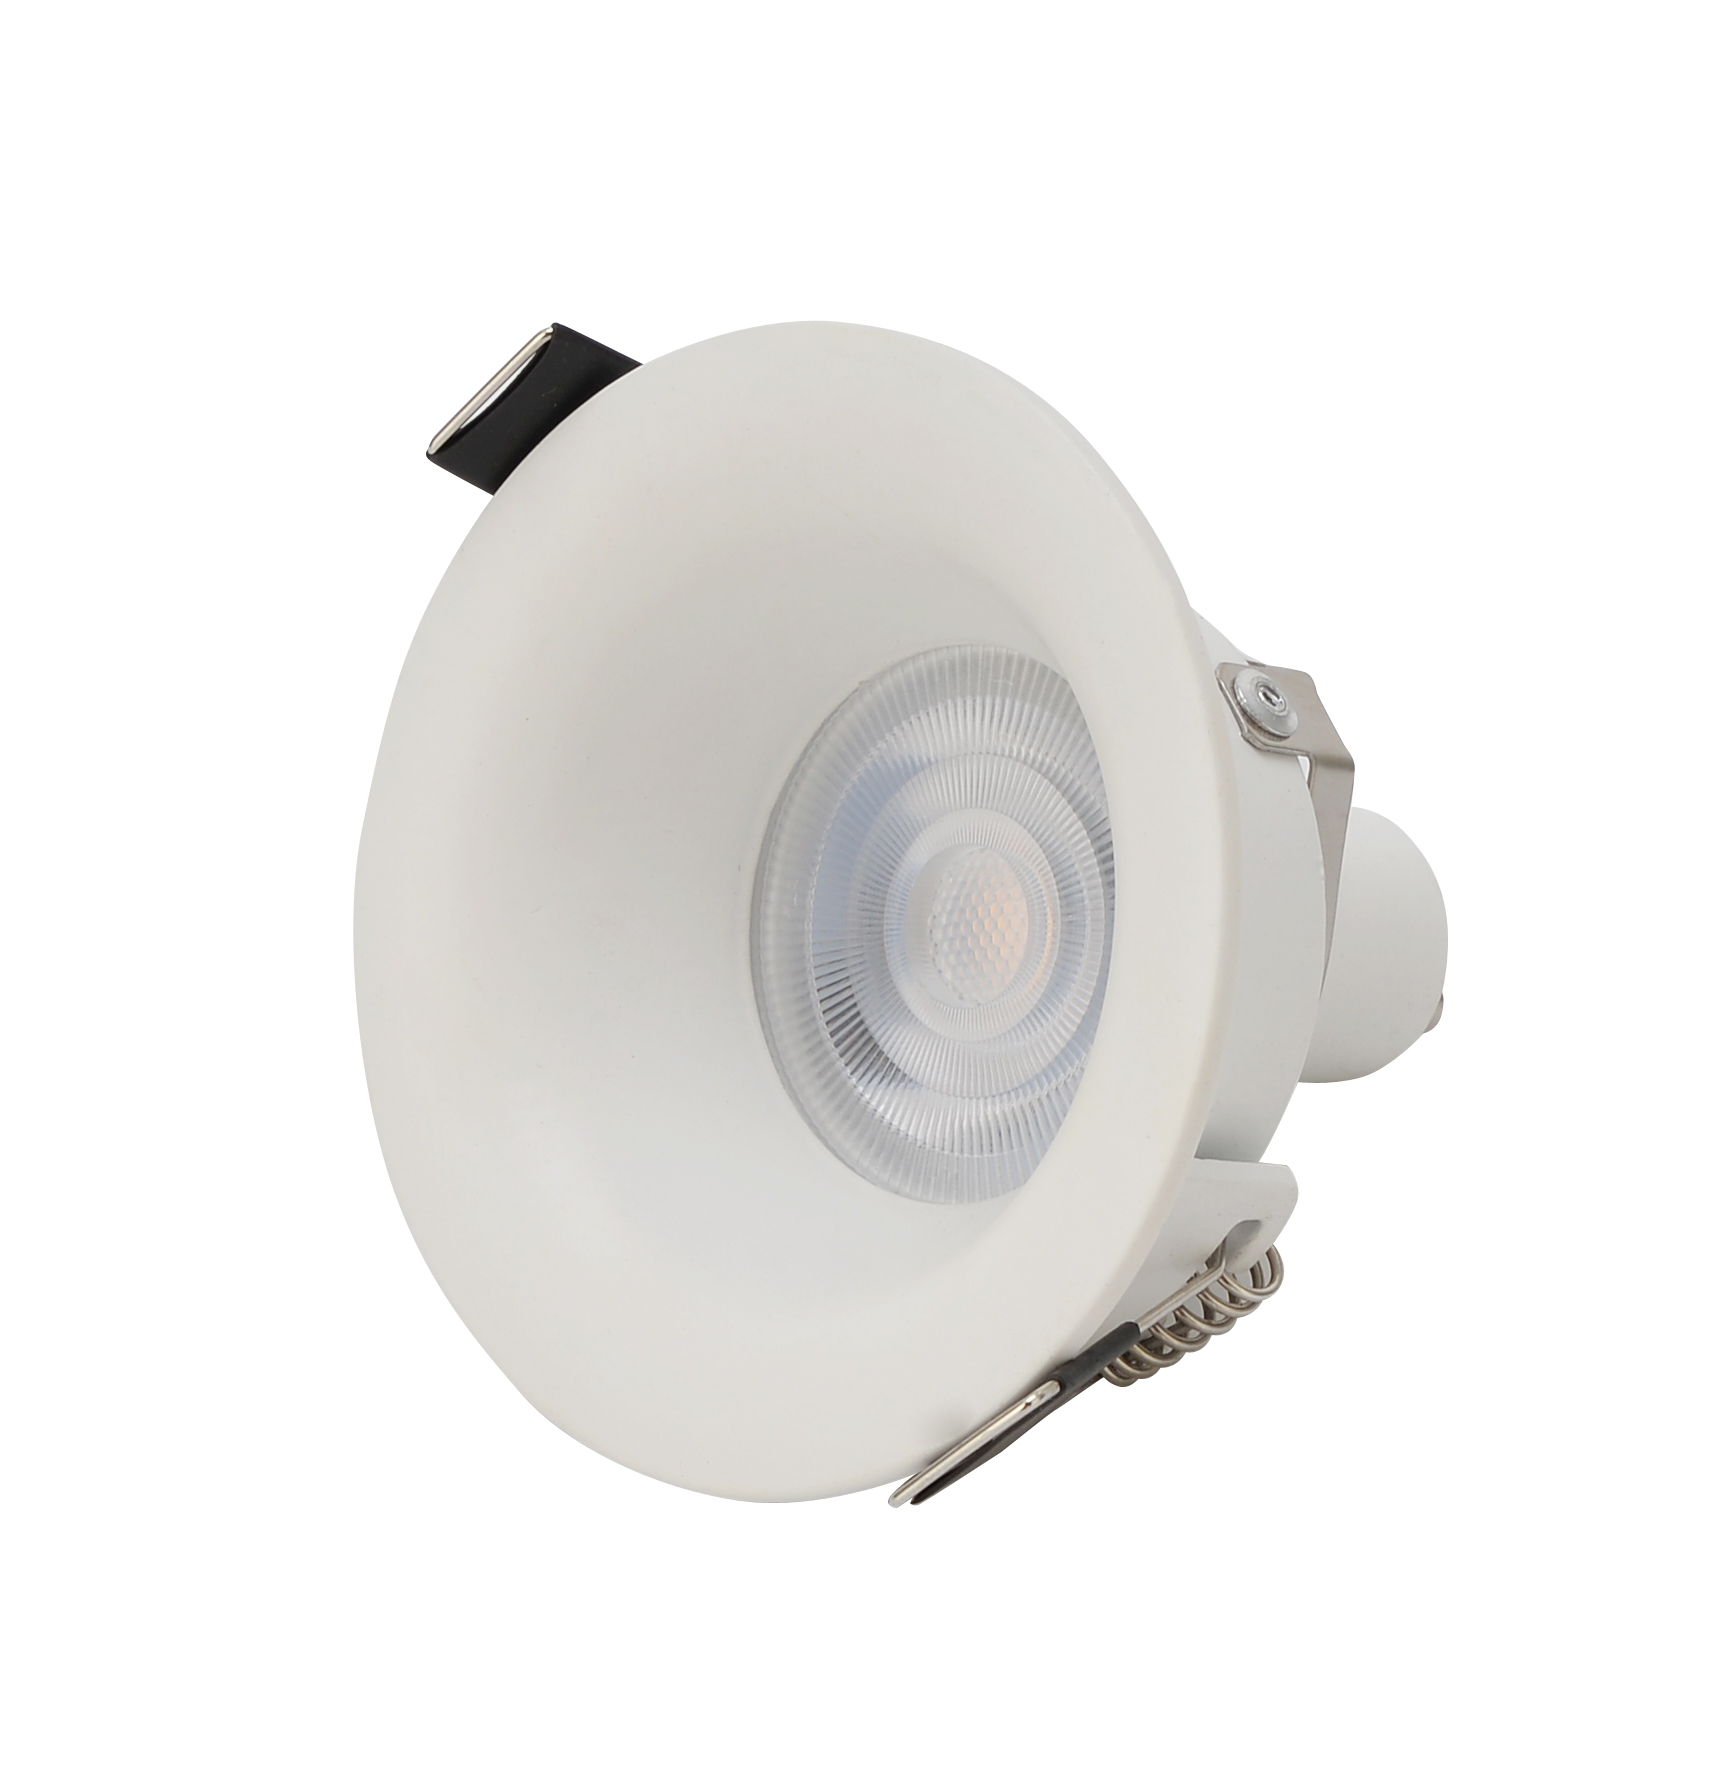 Led Spot Lamp Black white indoor Recessed GU10 Spotlight Frame MR16 downlight housing